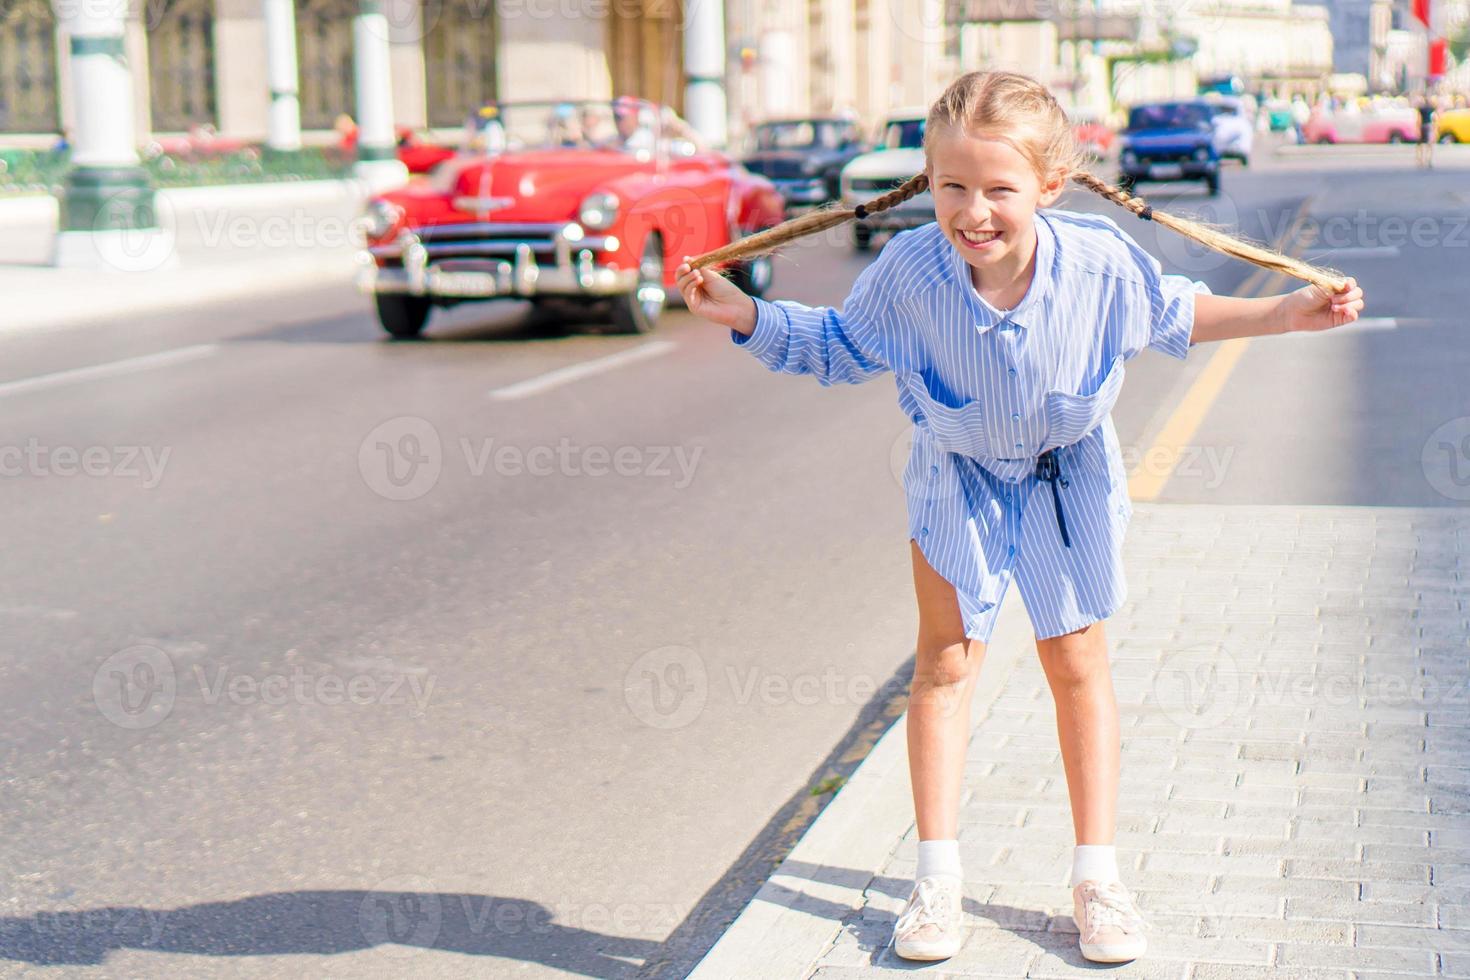 förtjusande liten flicka i populär område i gammal Havanna, kuba. porträtt av unge bakgrund årgång klassisk amerikan bil foto